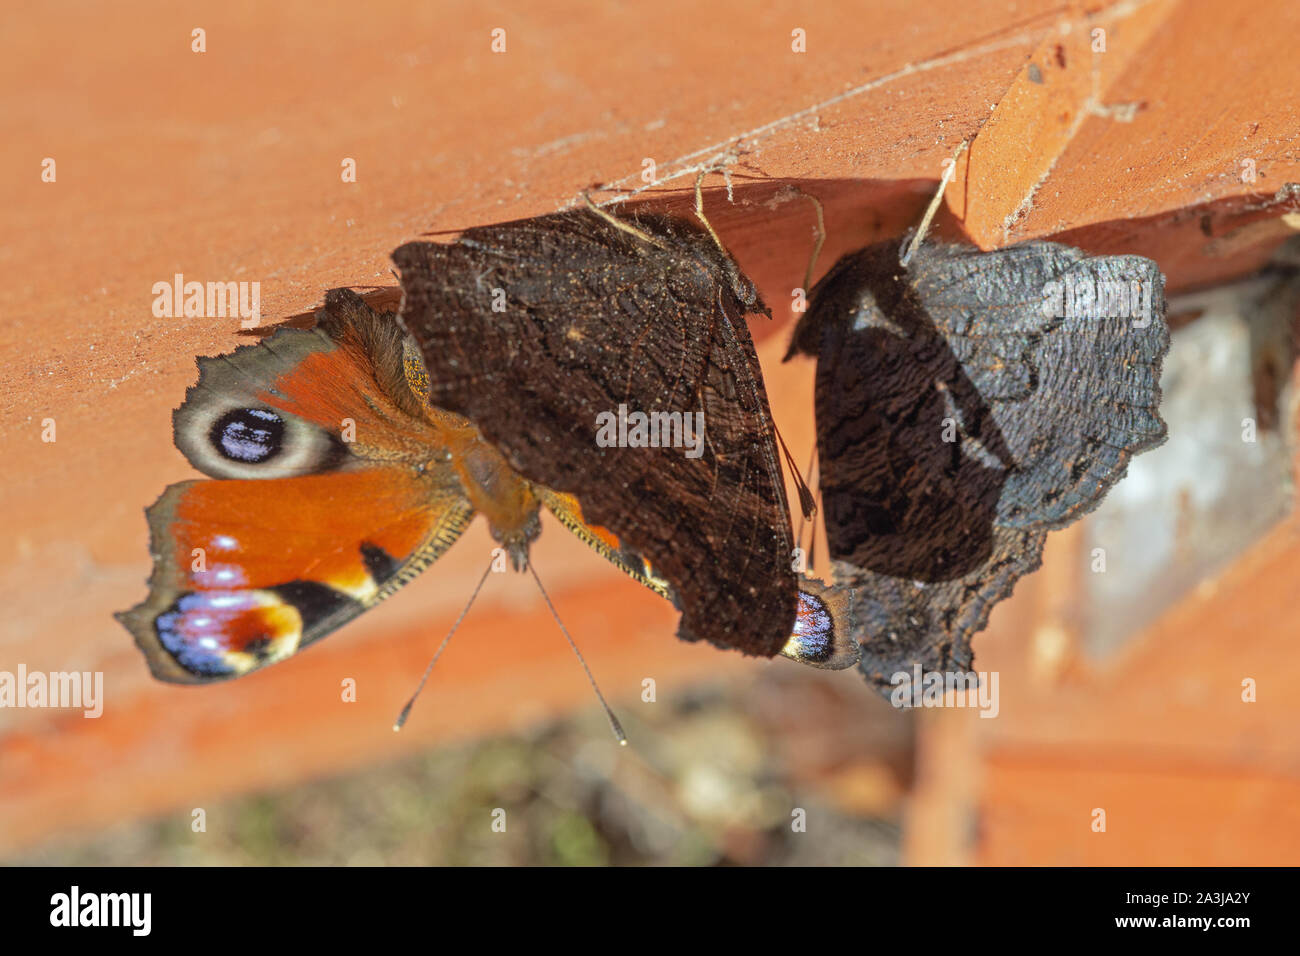 Peacock Schmetterlinge (Nymphalis io). Drei Schmetterlinge, zu den Inneren, Unterseite klammert, dachfläche von Geflügel Nistkasten. Zuflucht in schlechtem Wetter. Stockfoto